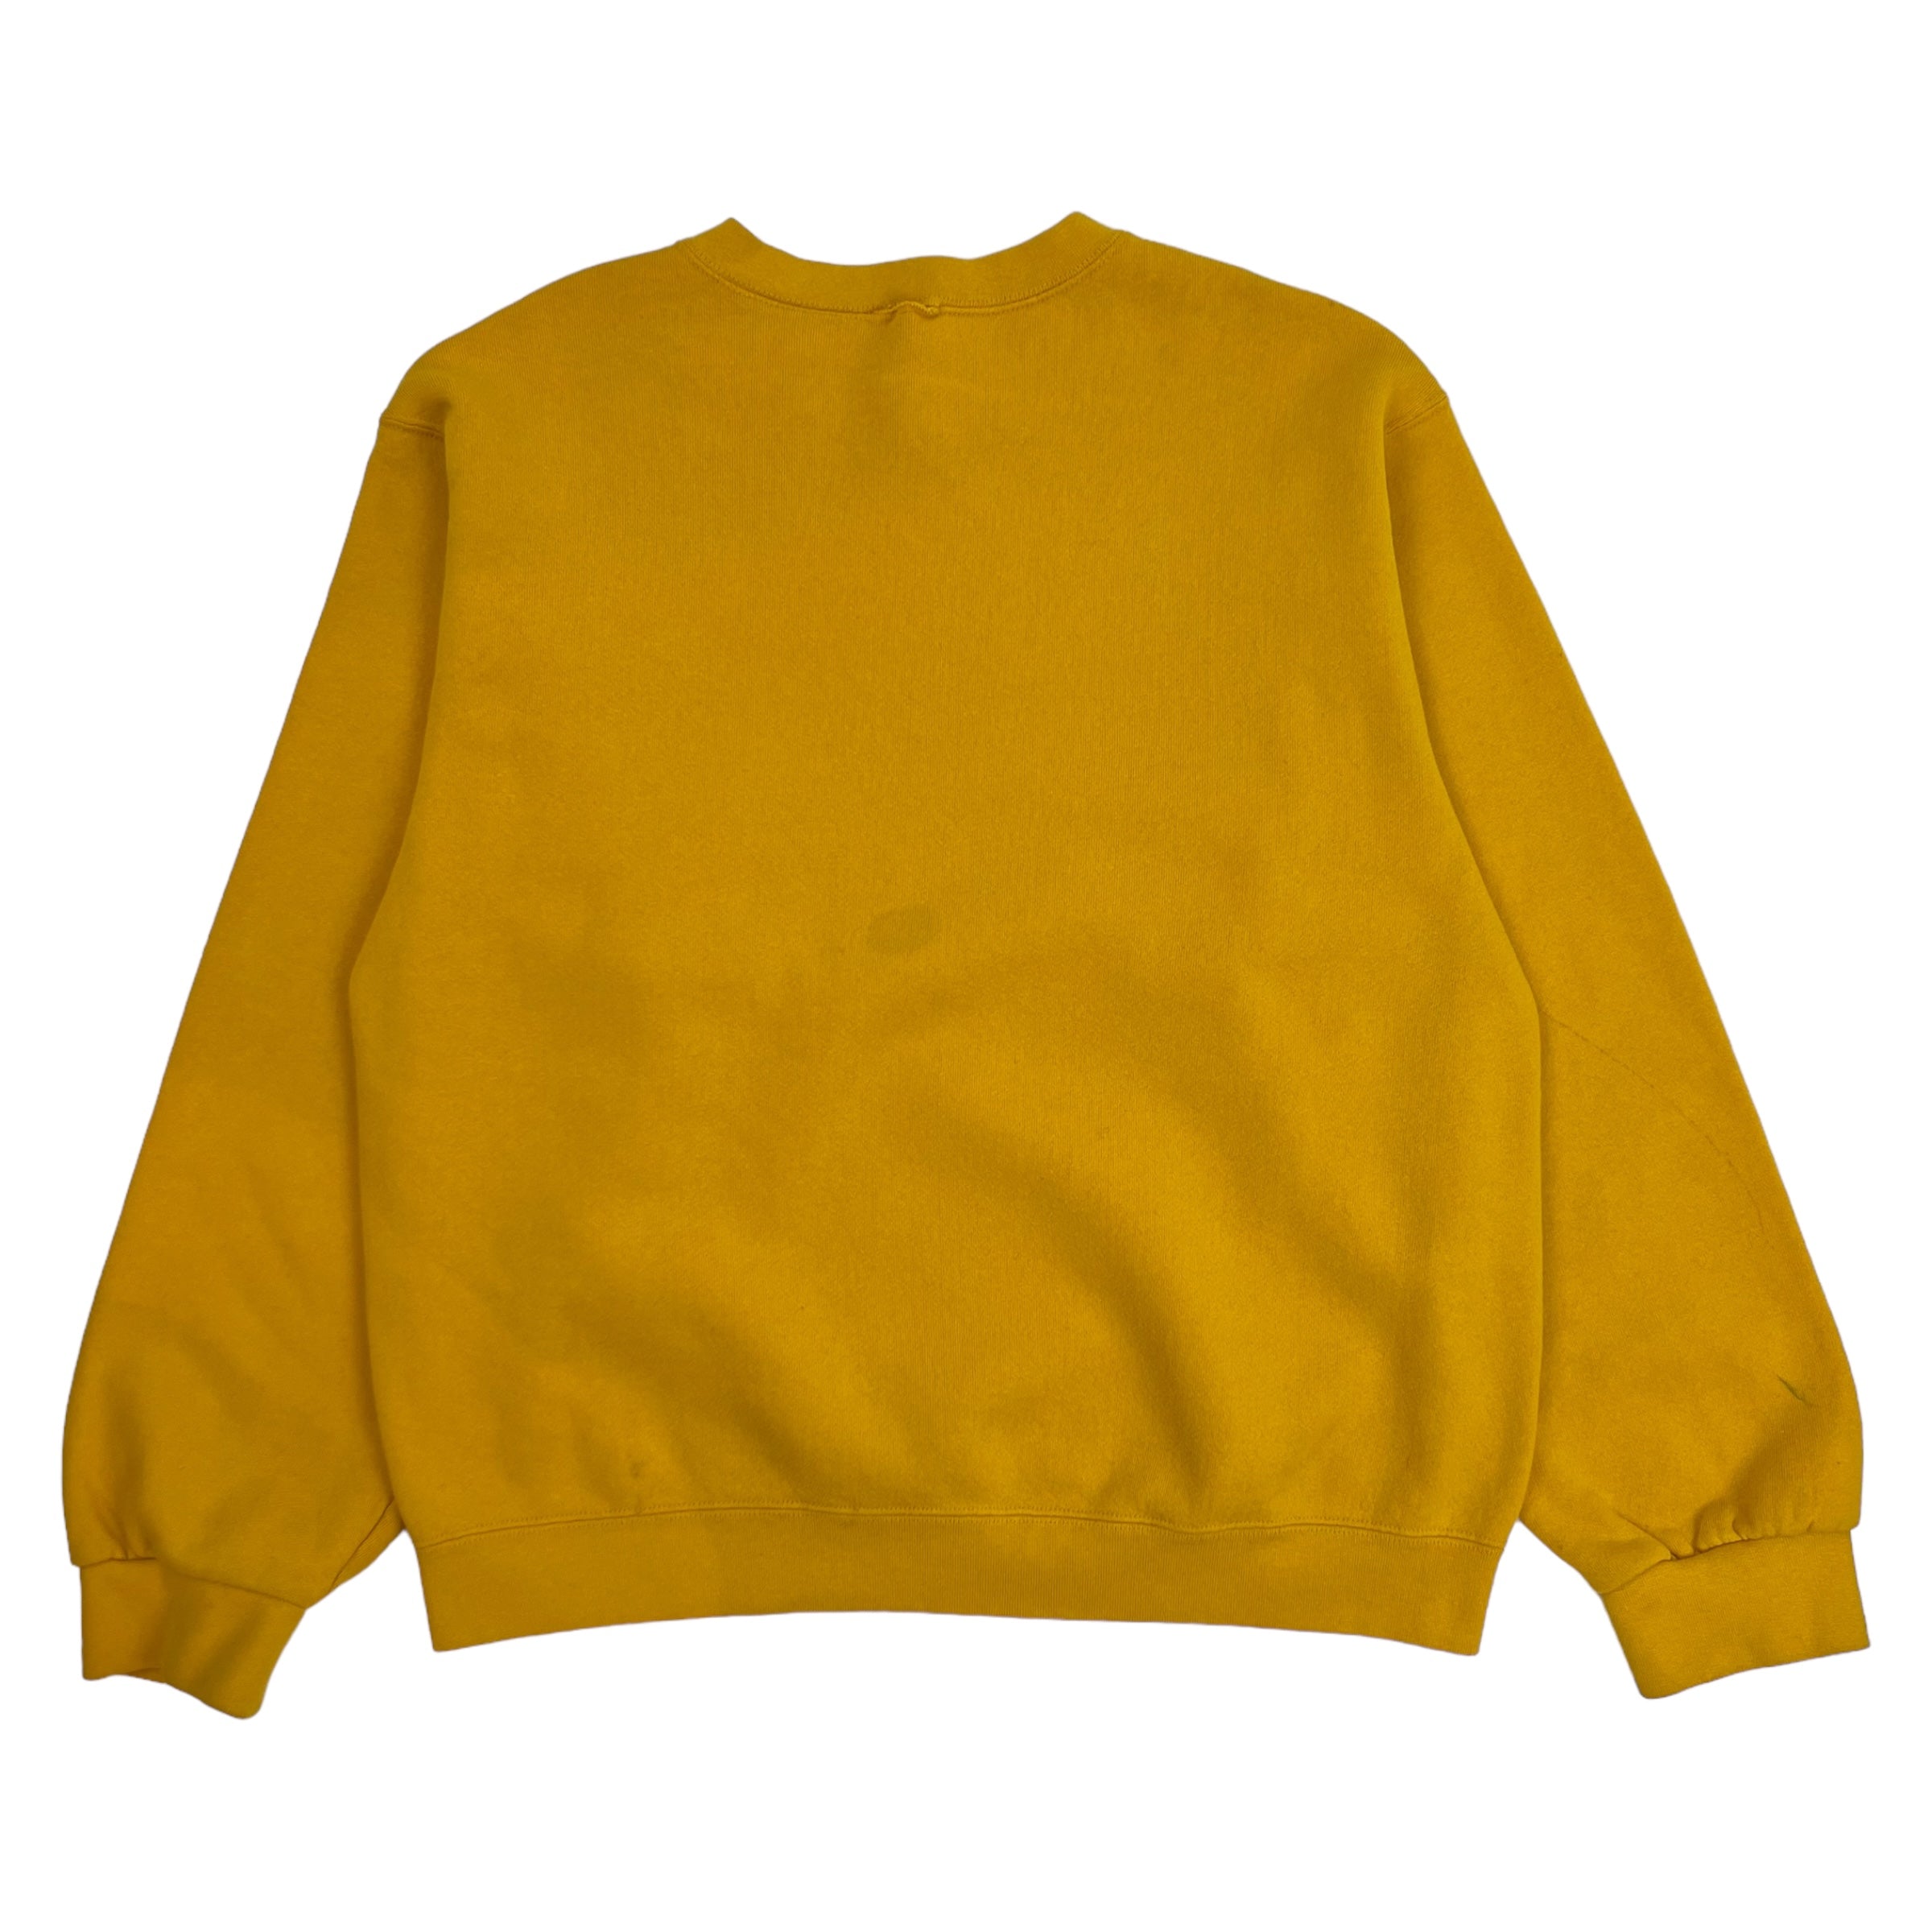 Vintage Nike Swoosh Crewneck Yellow - Yellow Sweatshirt